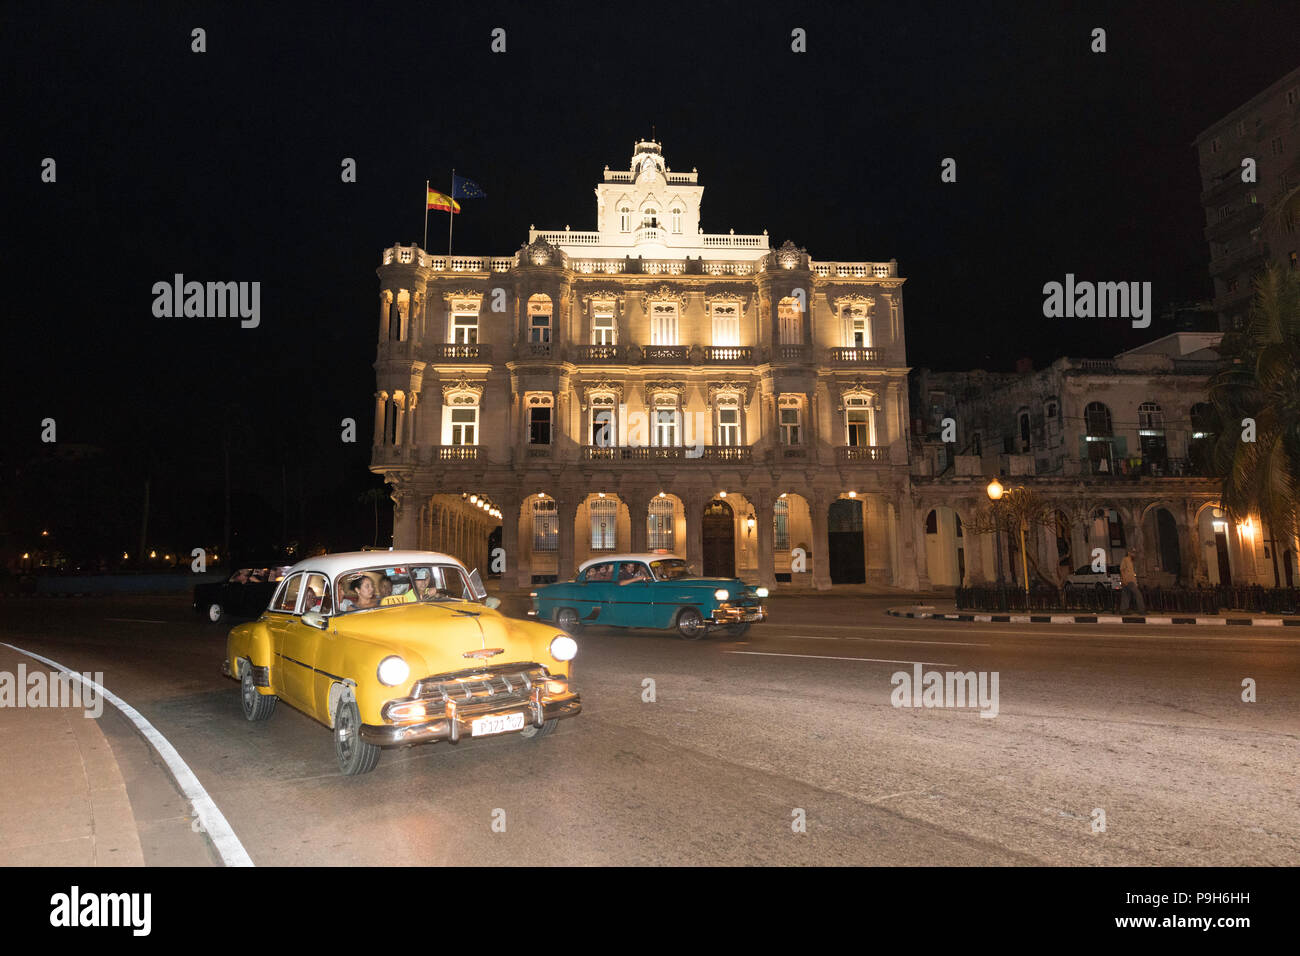 Voiture américaine classique utilisé comme taxi, connu localement comme almendrones, La Havane, Cuba. Banque D'Images